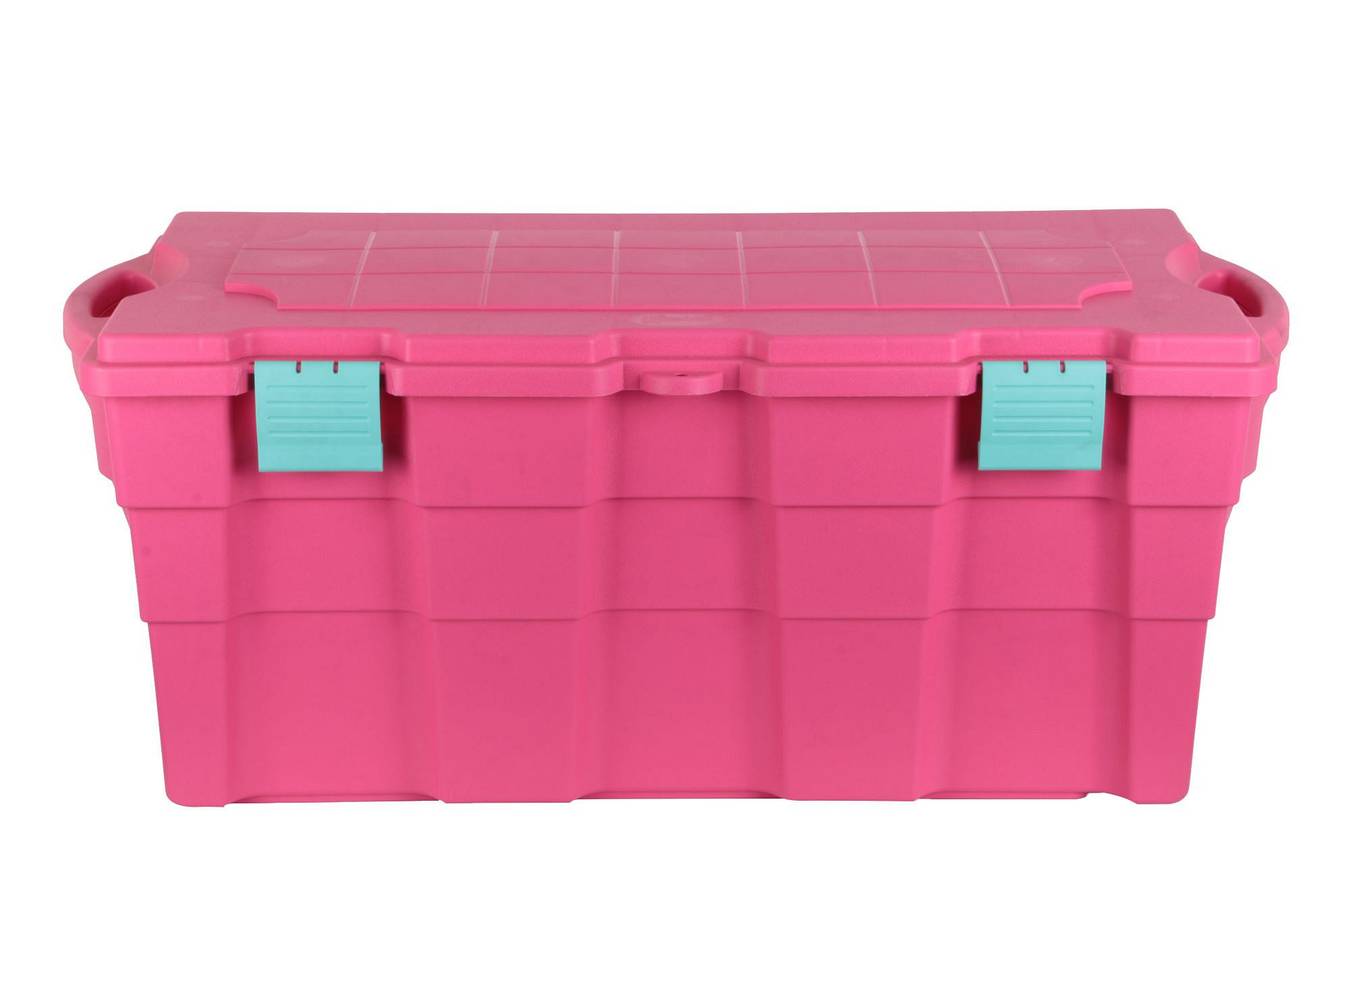 M+design baúl 100 litros rosado wenco (1 baúl)